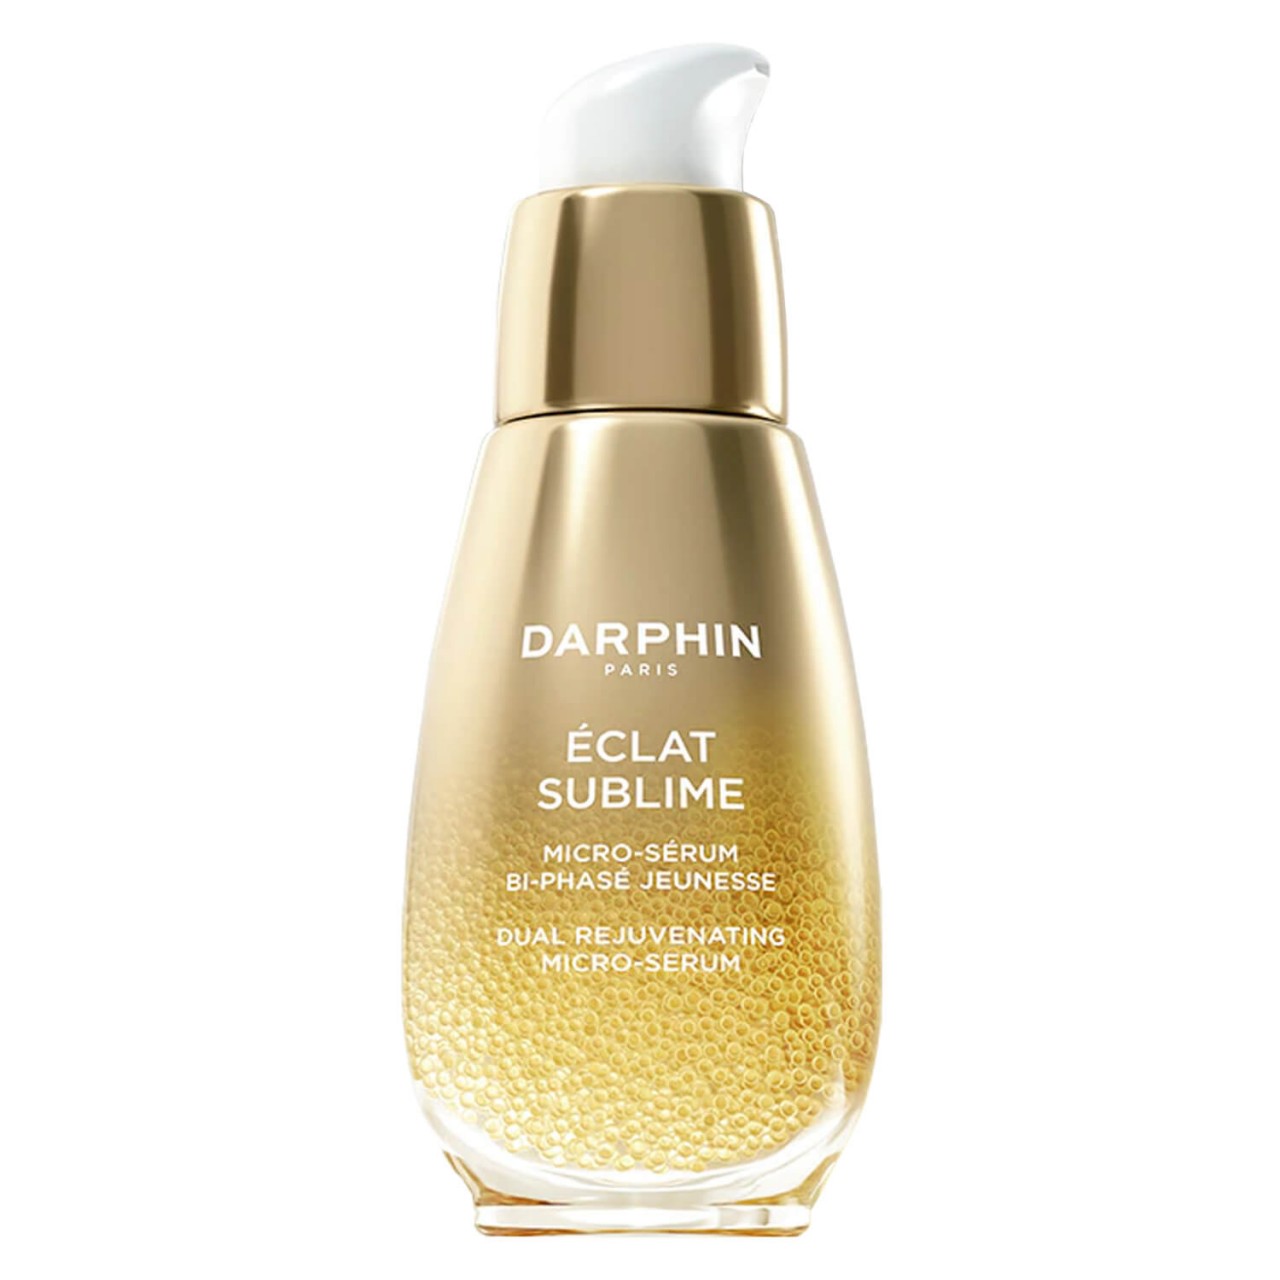 DARPHIN CARE - Eclat Sublime Dual Rejuvenating Micro-Serum von Darphin